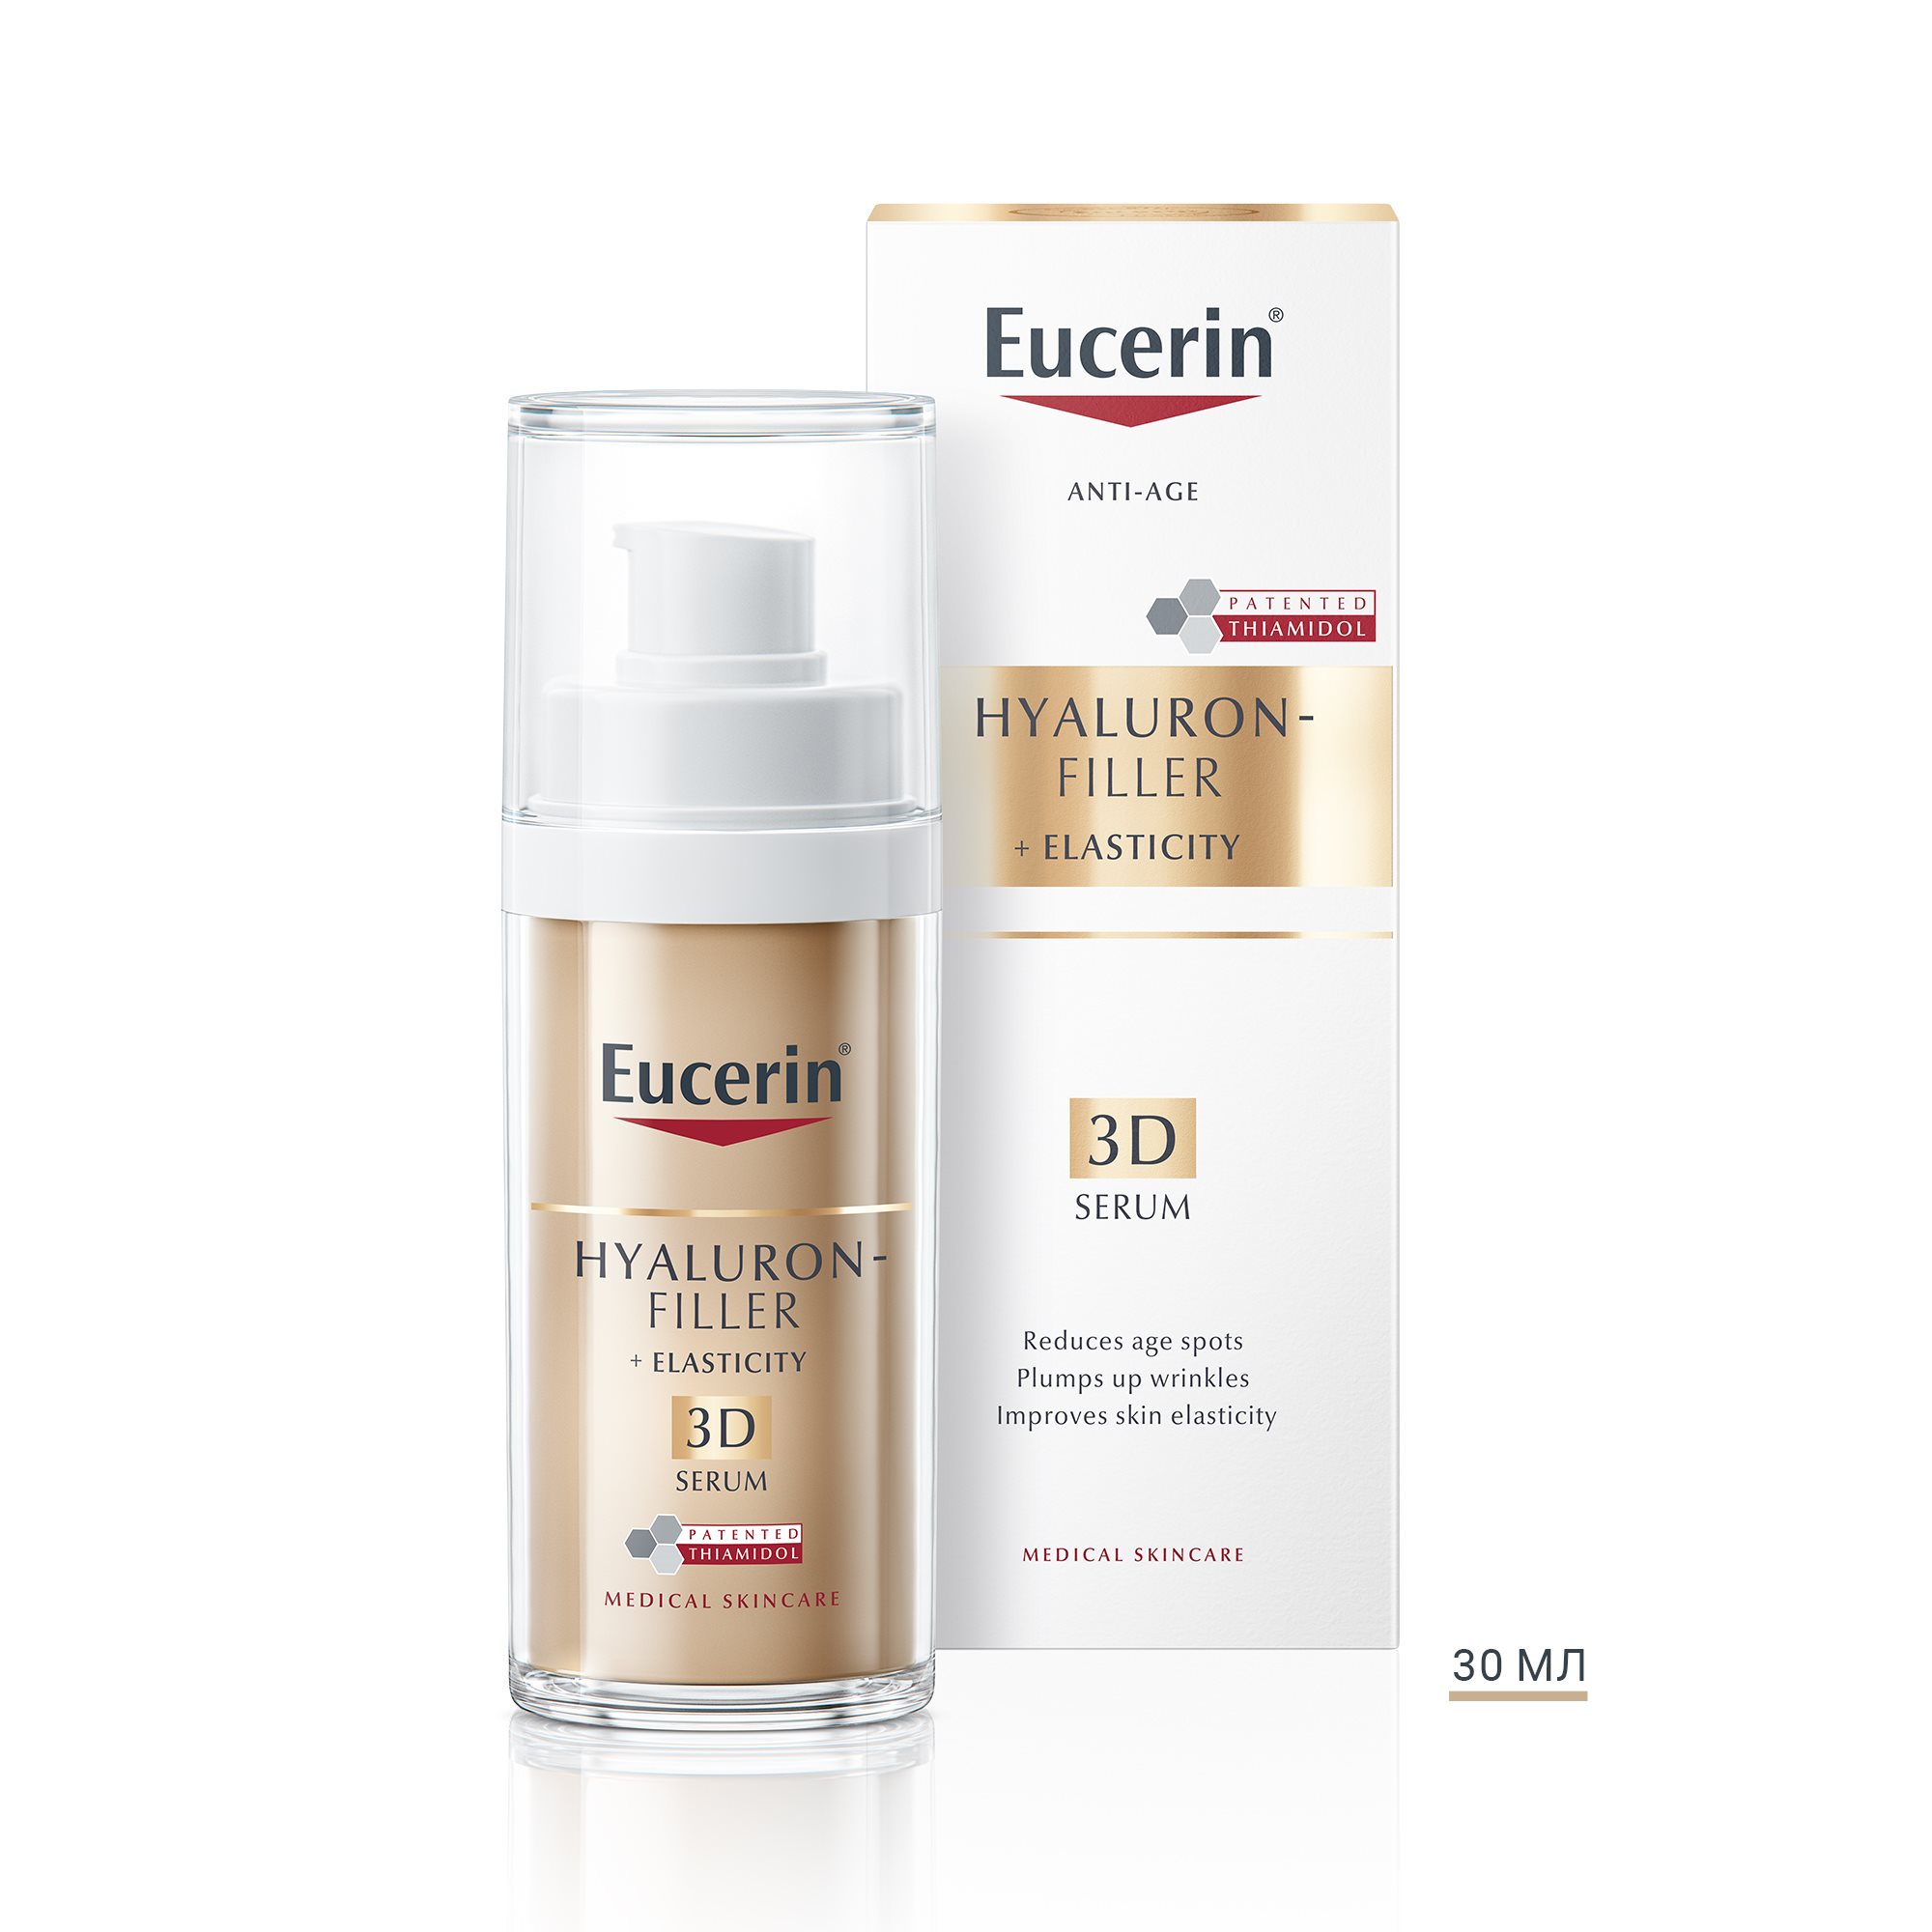 Eucerin Hyaluron-Filler + Elasticity Потрійна 3D сироватка для біоревитализації і підвищення пружності шкіри 